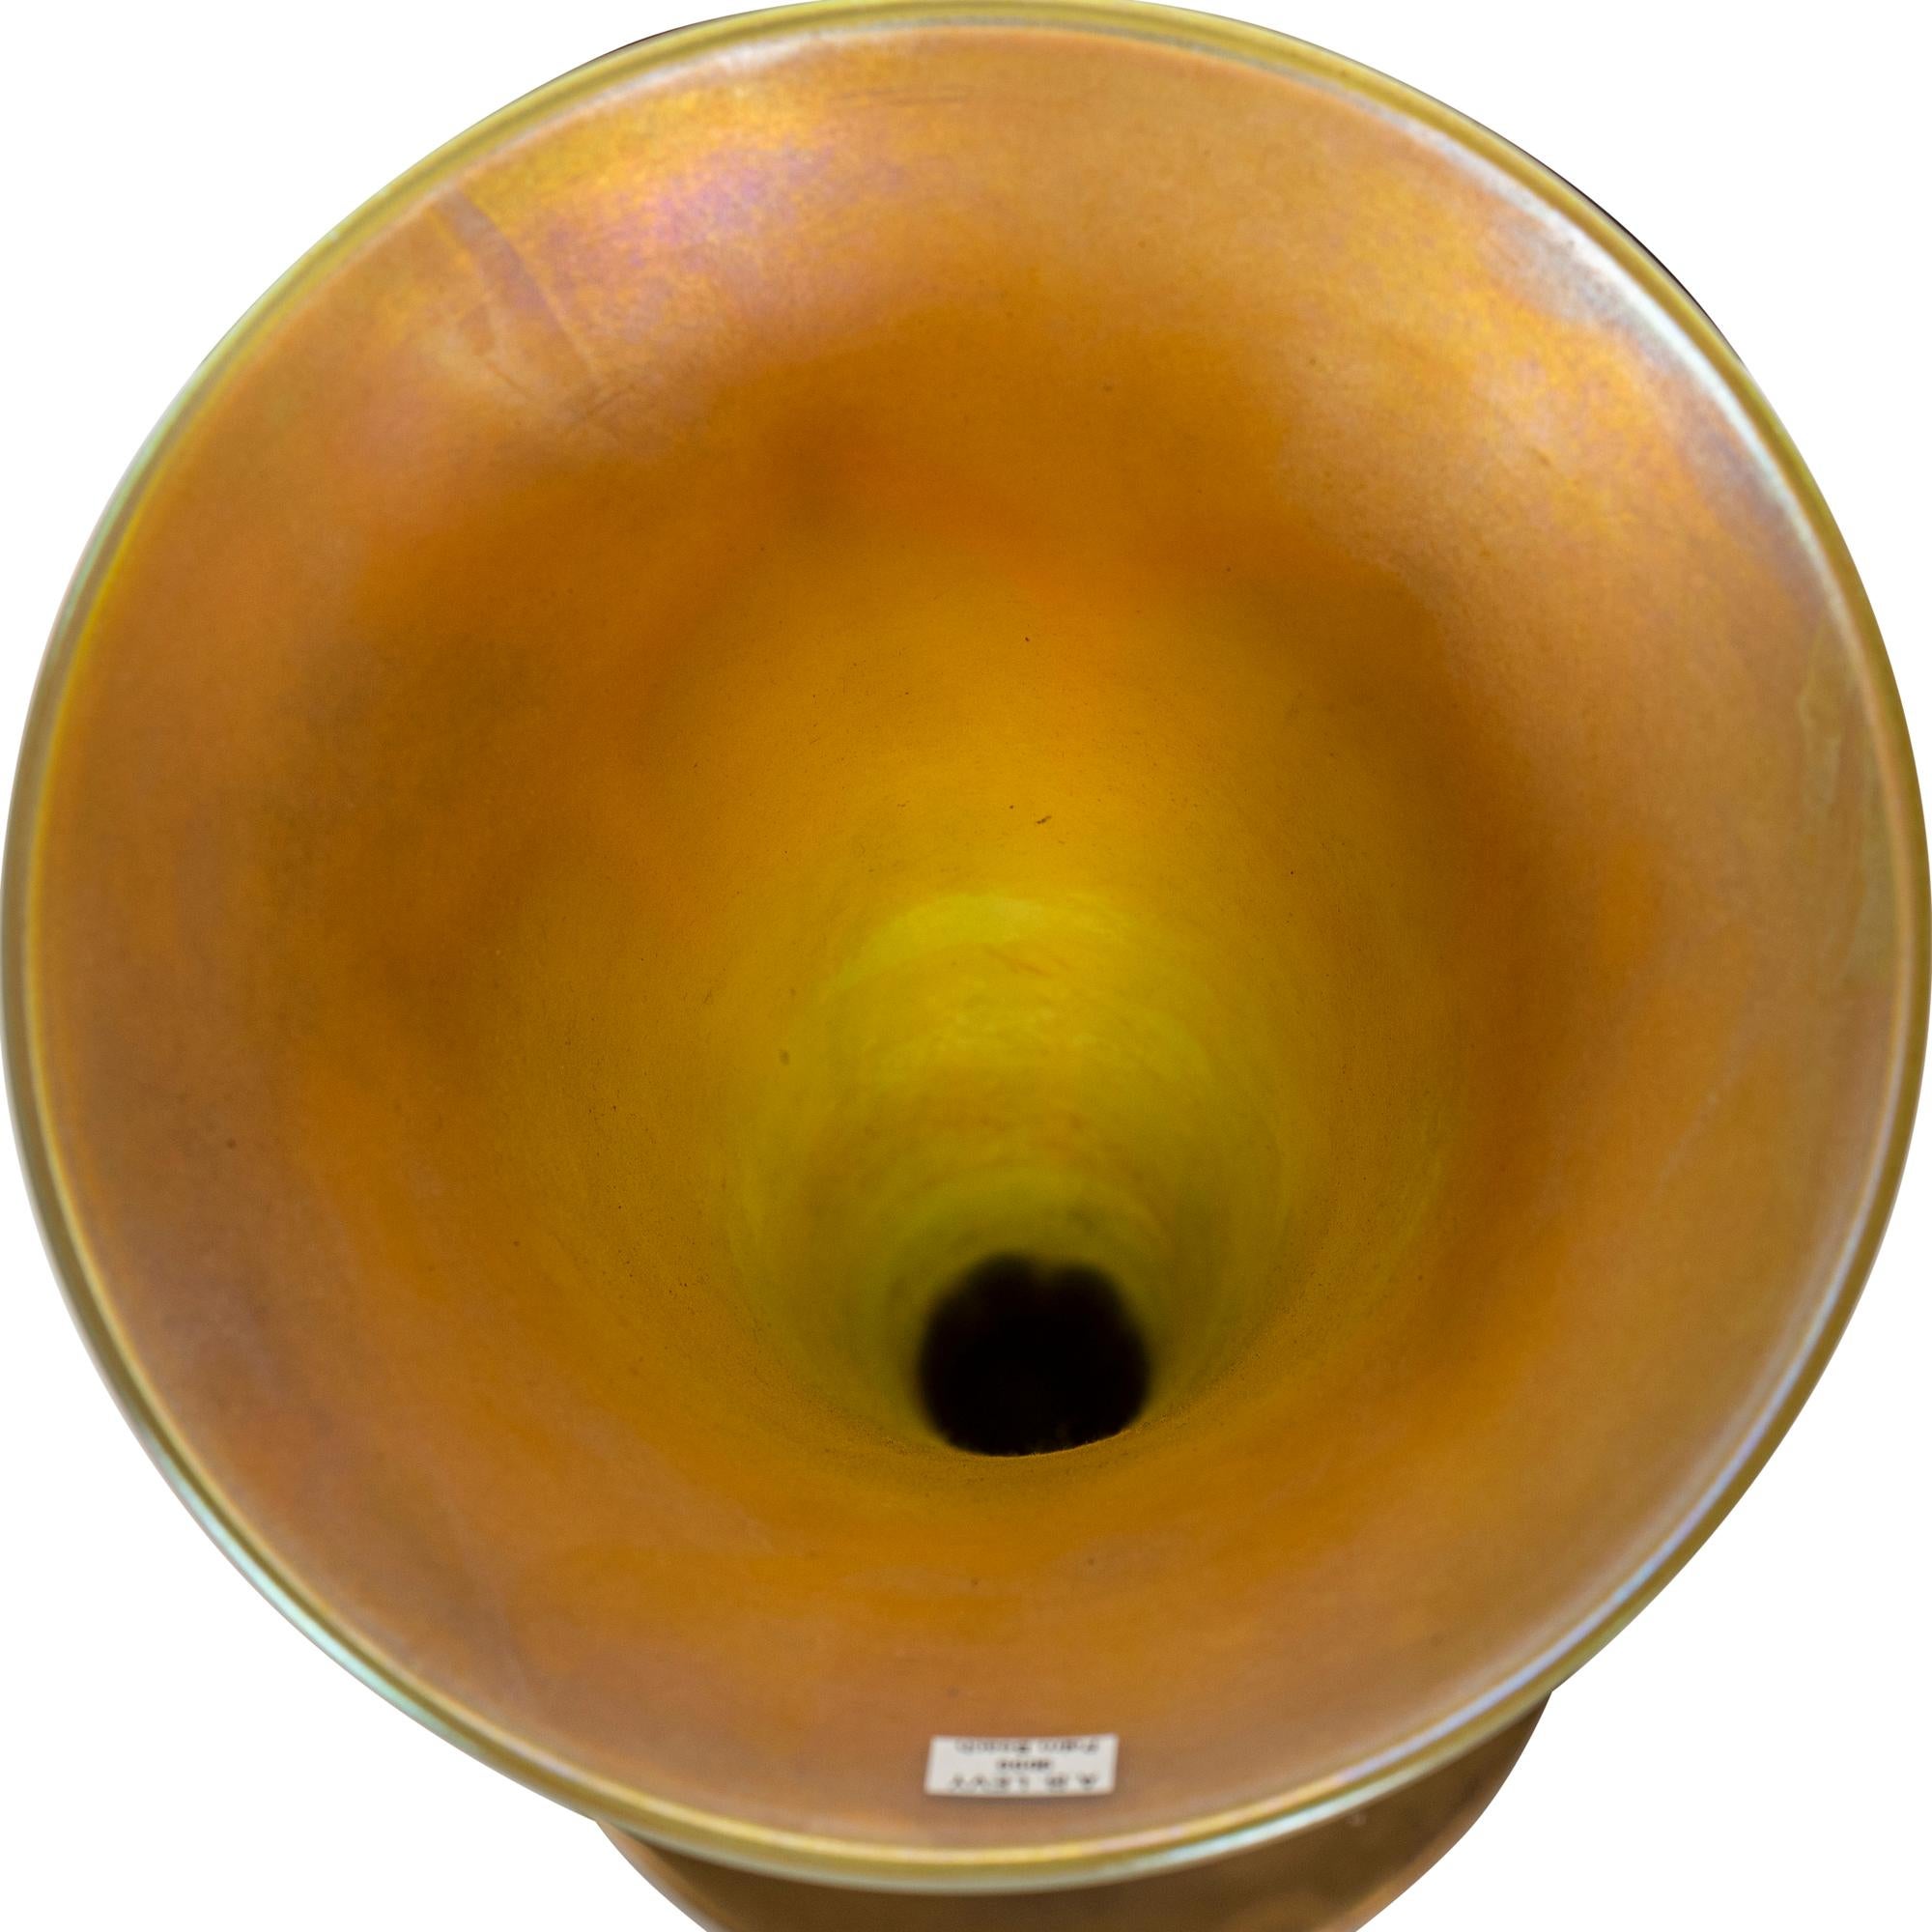 Tiffany-Studios
um 1900
Fein dekorierte Vase aus vergoldeter Bronze und Tiffany-Favril-Glas, trompetenförmig, Glaseinsatz mit grünem Blattmotiv und Goldbändern auf opalfarbenem Grund, goldfarben ausgekleidet
graviert L.C.T. Favrile, Sockel